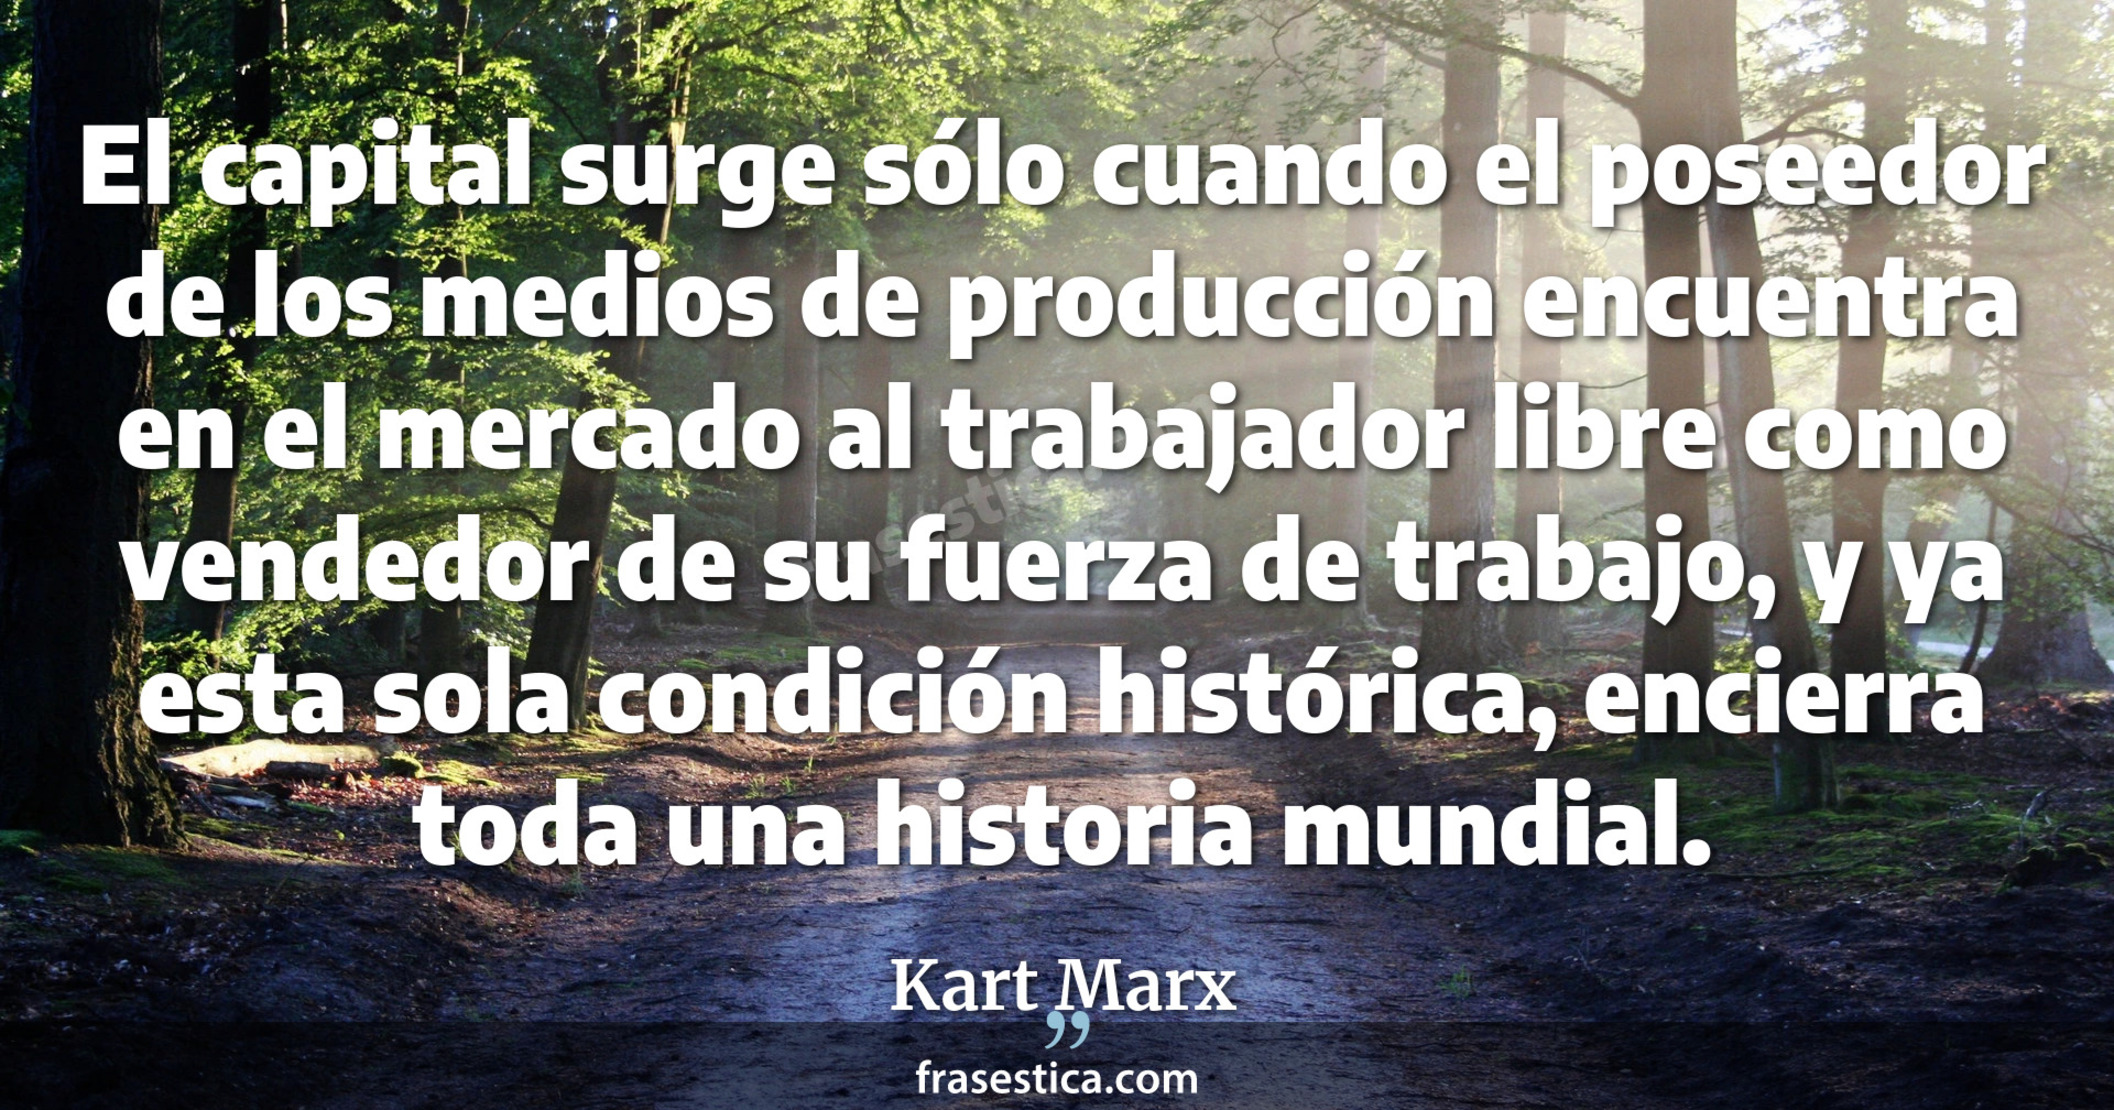 El capital surge sólo cuando el poseedor de los medios de producción encuentra en el mercado al trabajador libre como vendedor de su fuerza de trabajo, y ya esta sola condición histórica, encierra toda una historia mundial. - Kart Marx